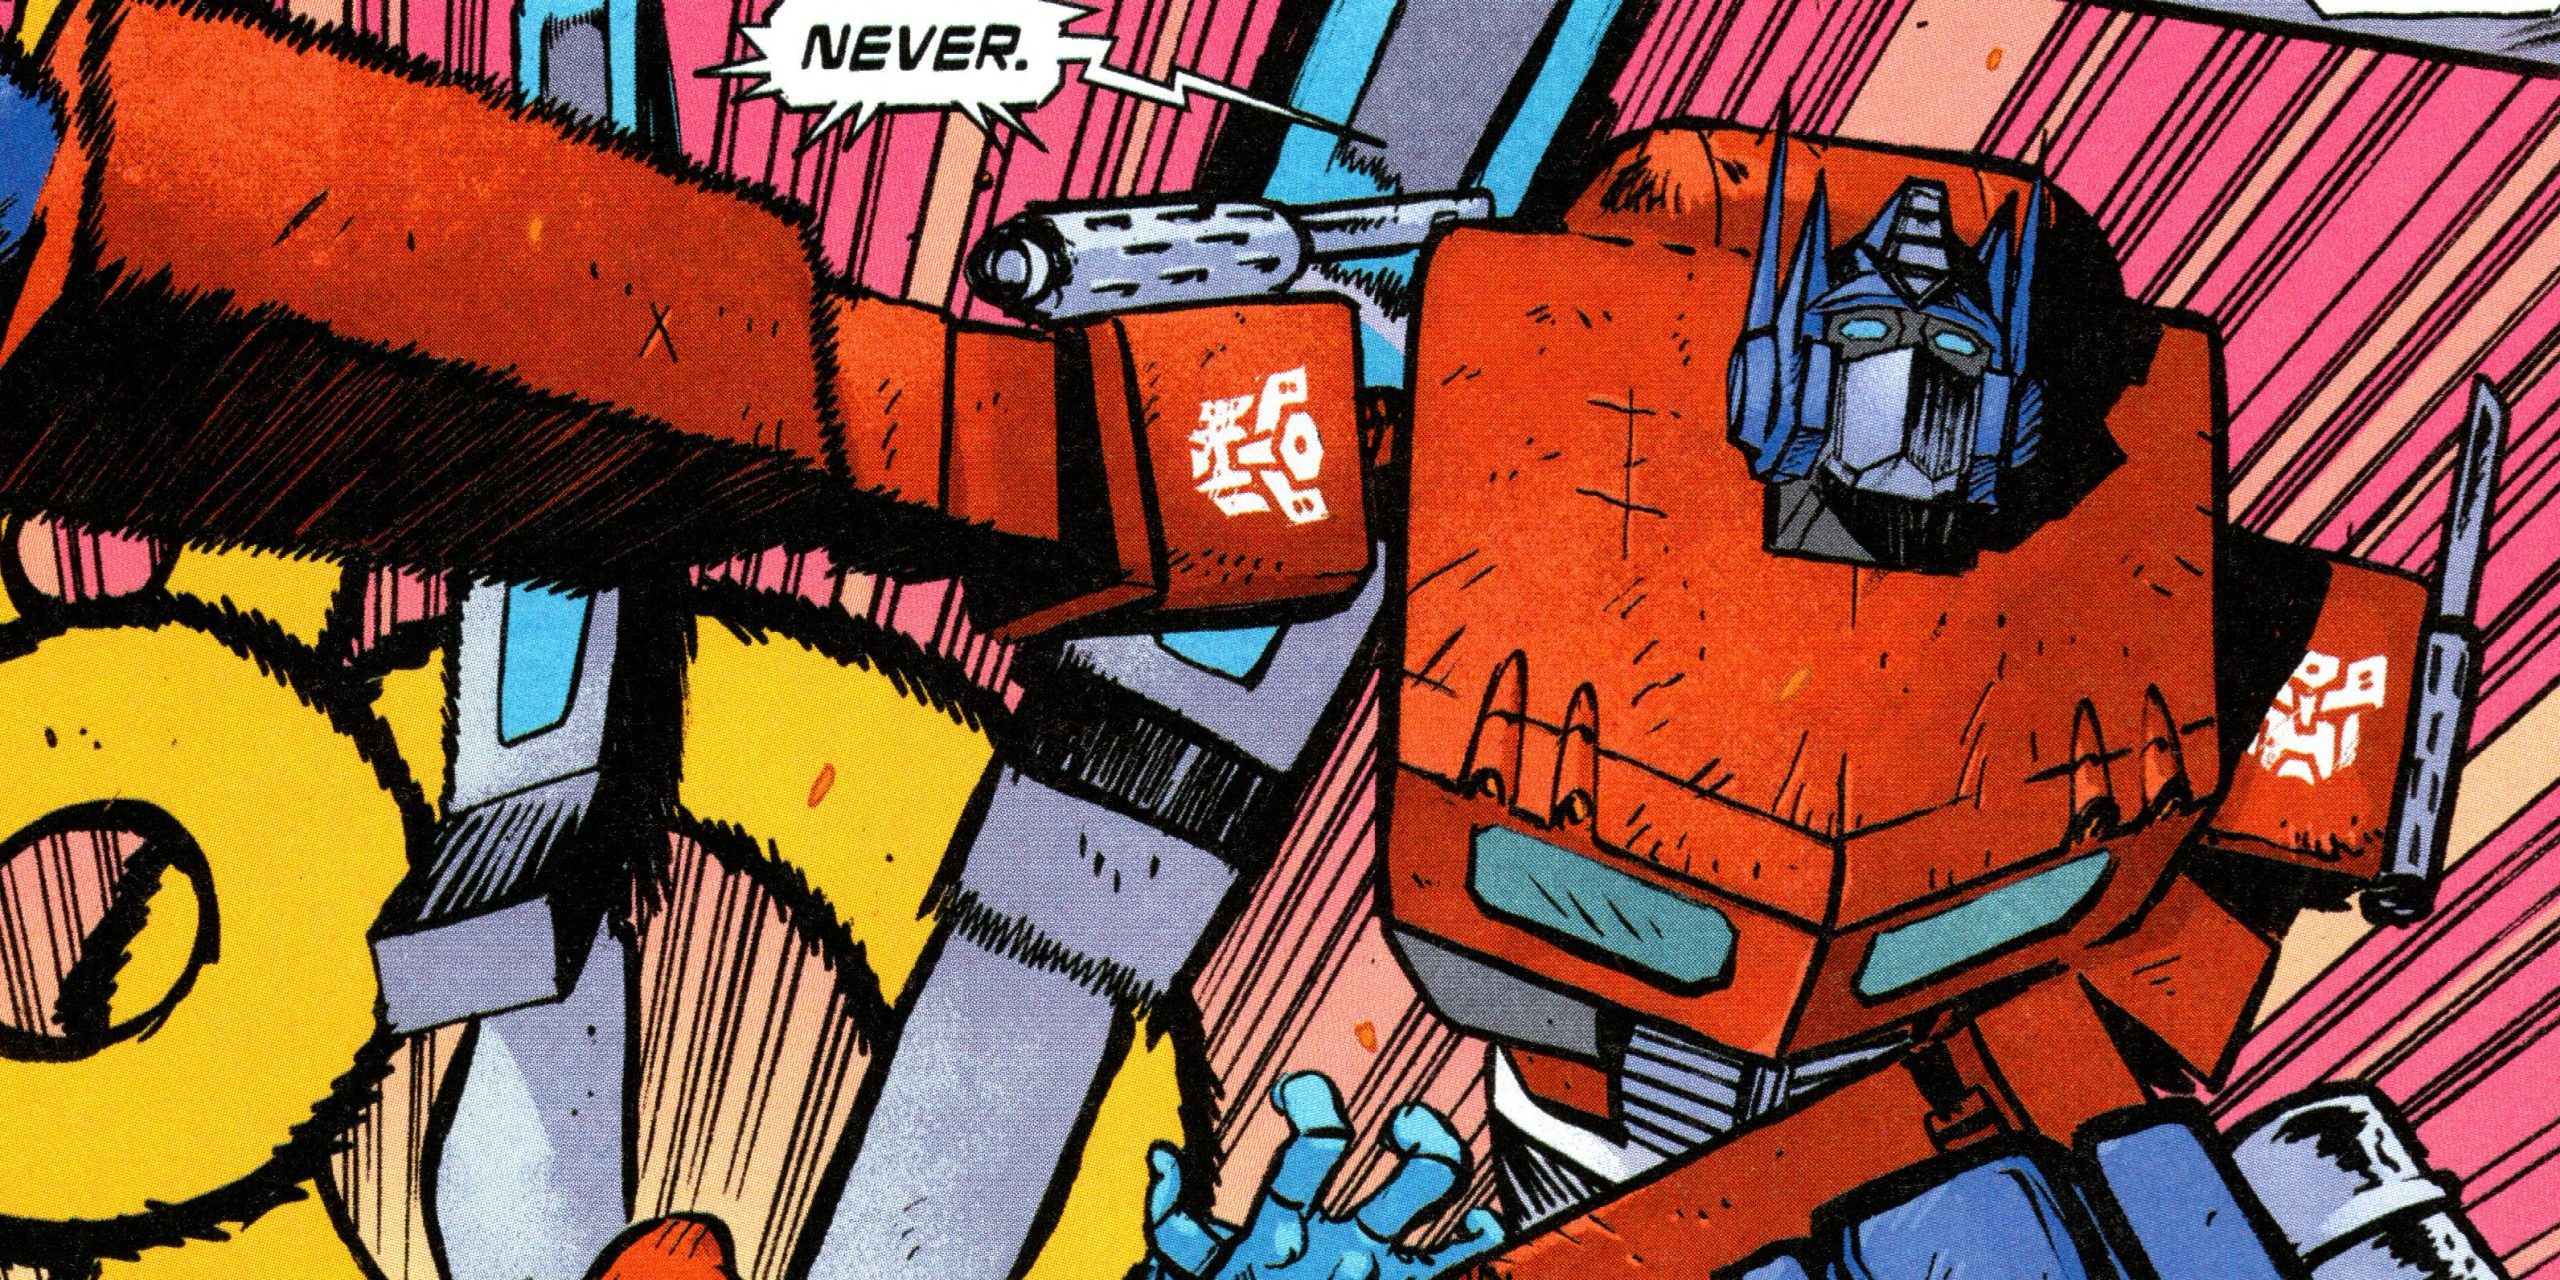 La nueva continuidad de Transformers comienza con un tributo perfecto a la lucha libre profesional